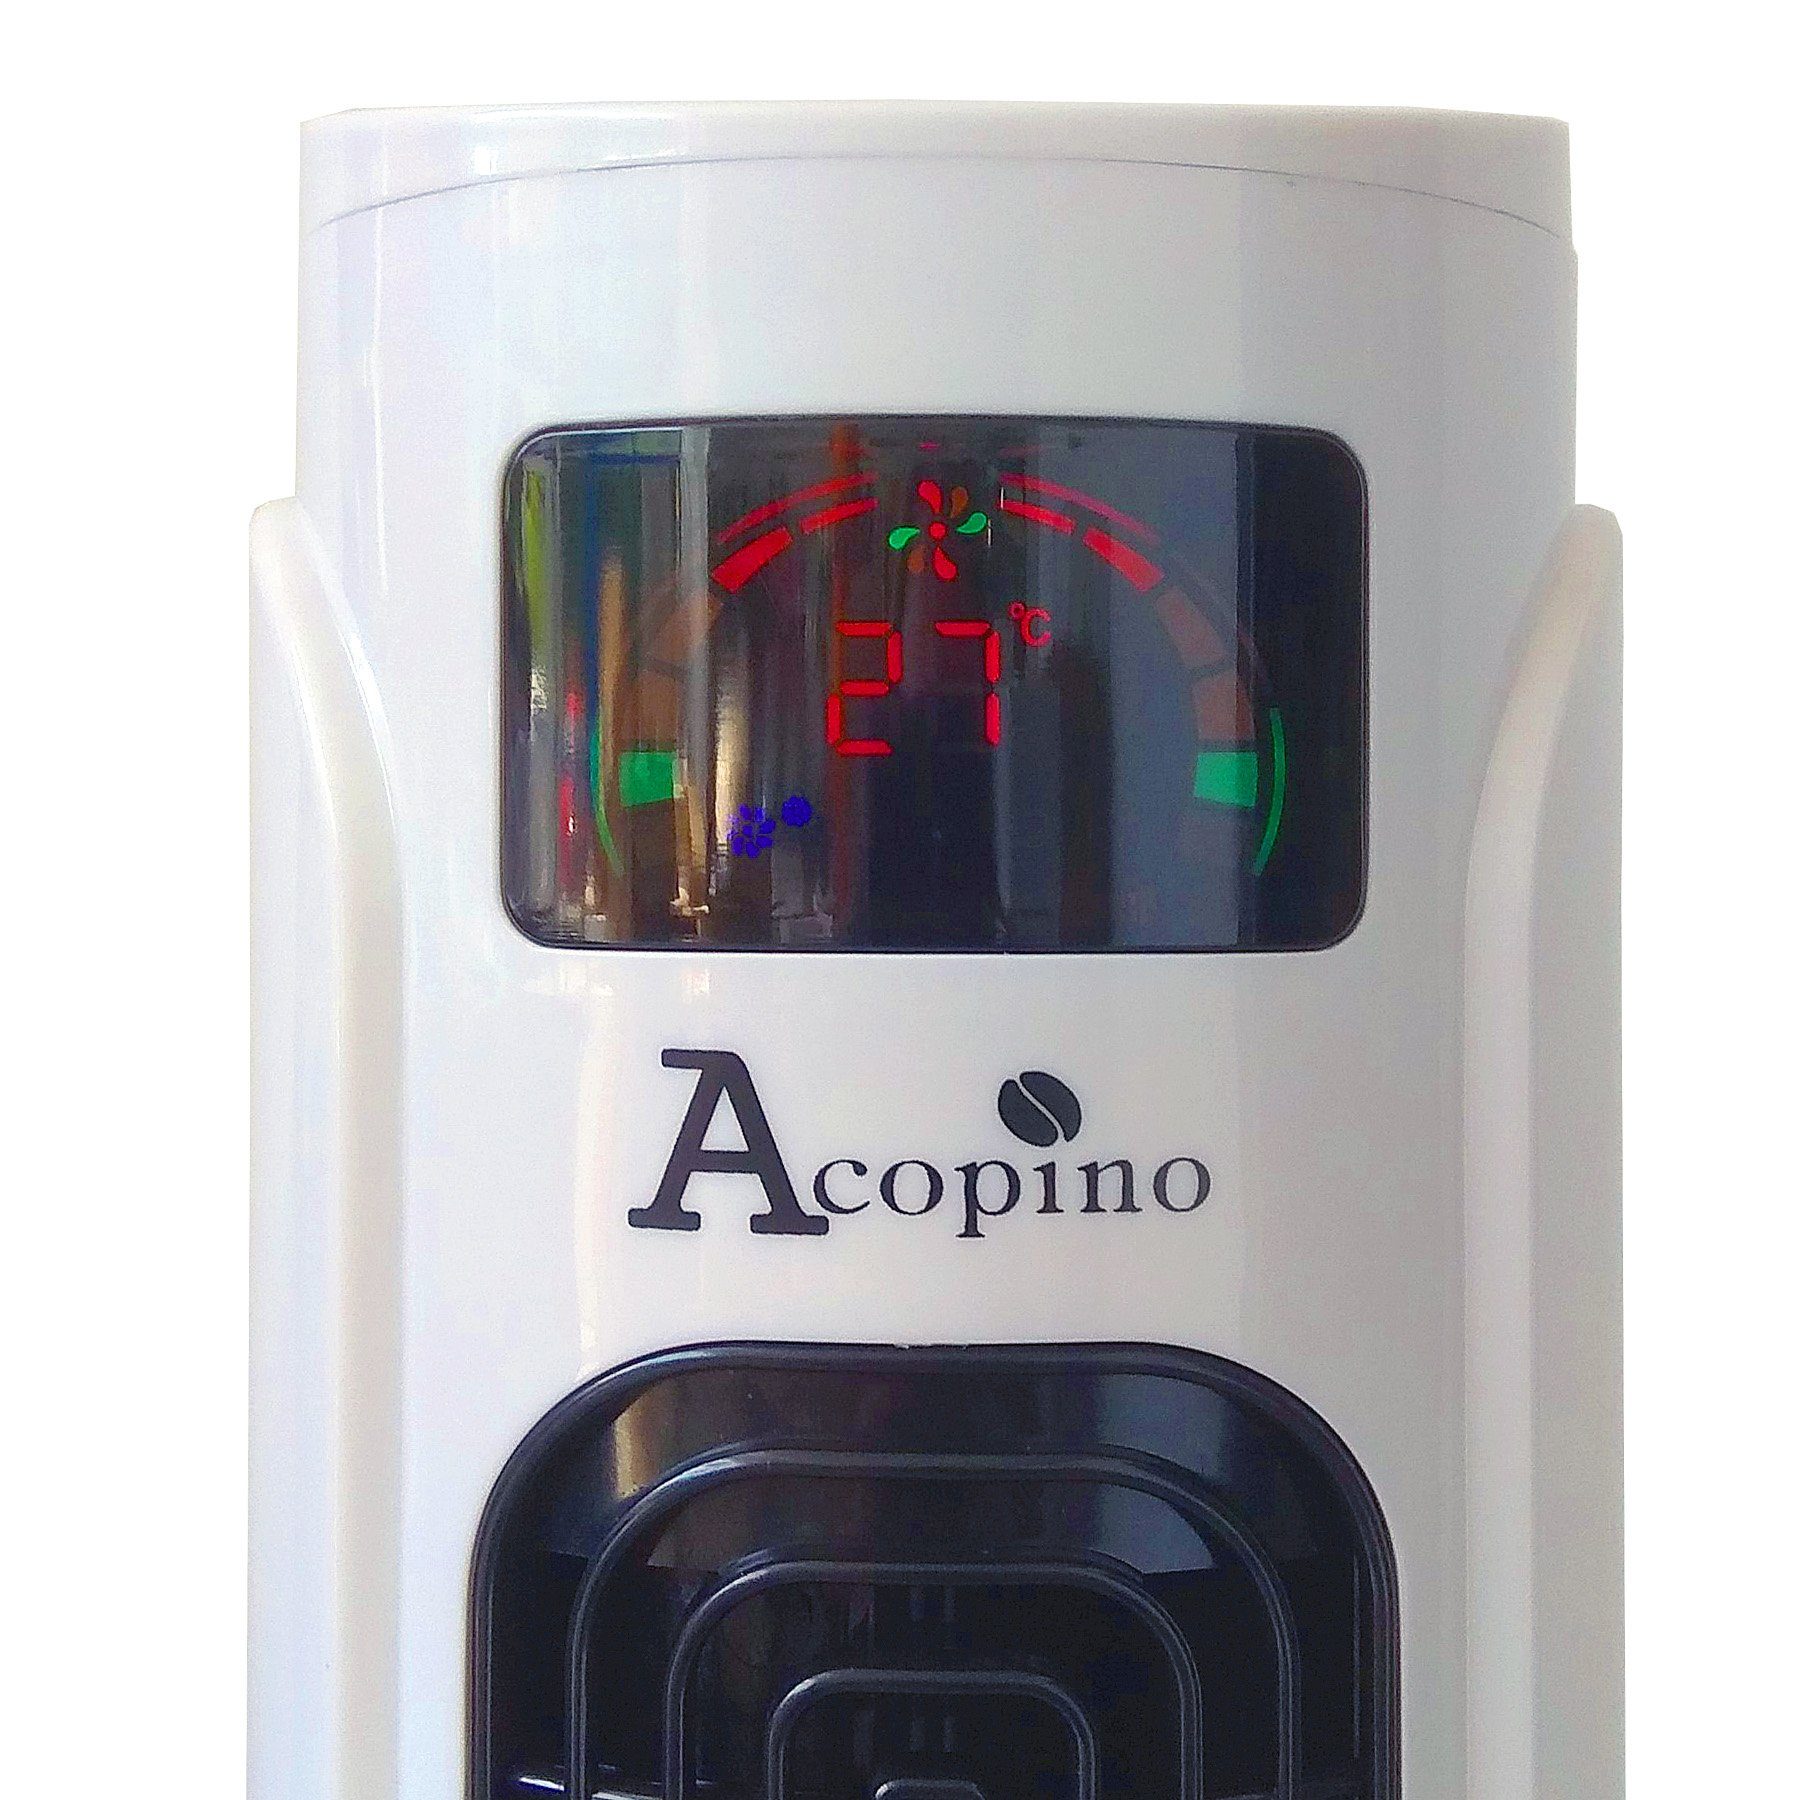 Acopino Turmventilator vT25 mit Fernbedienung